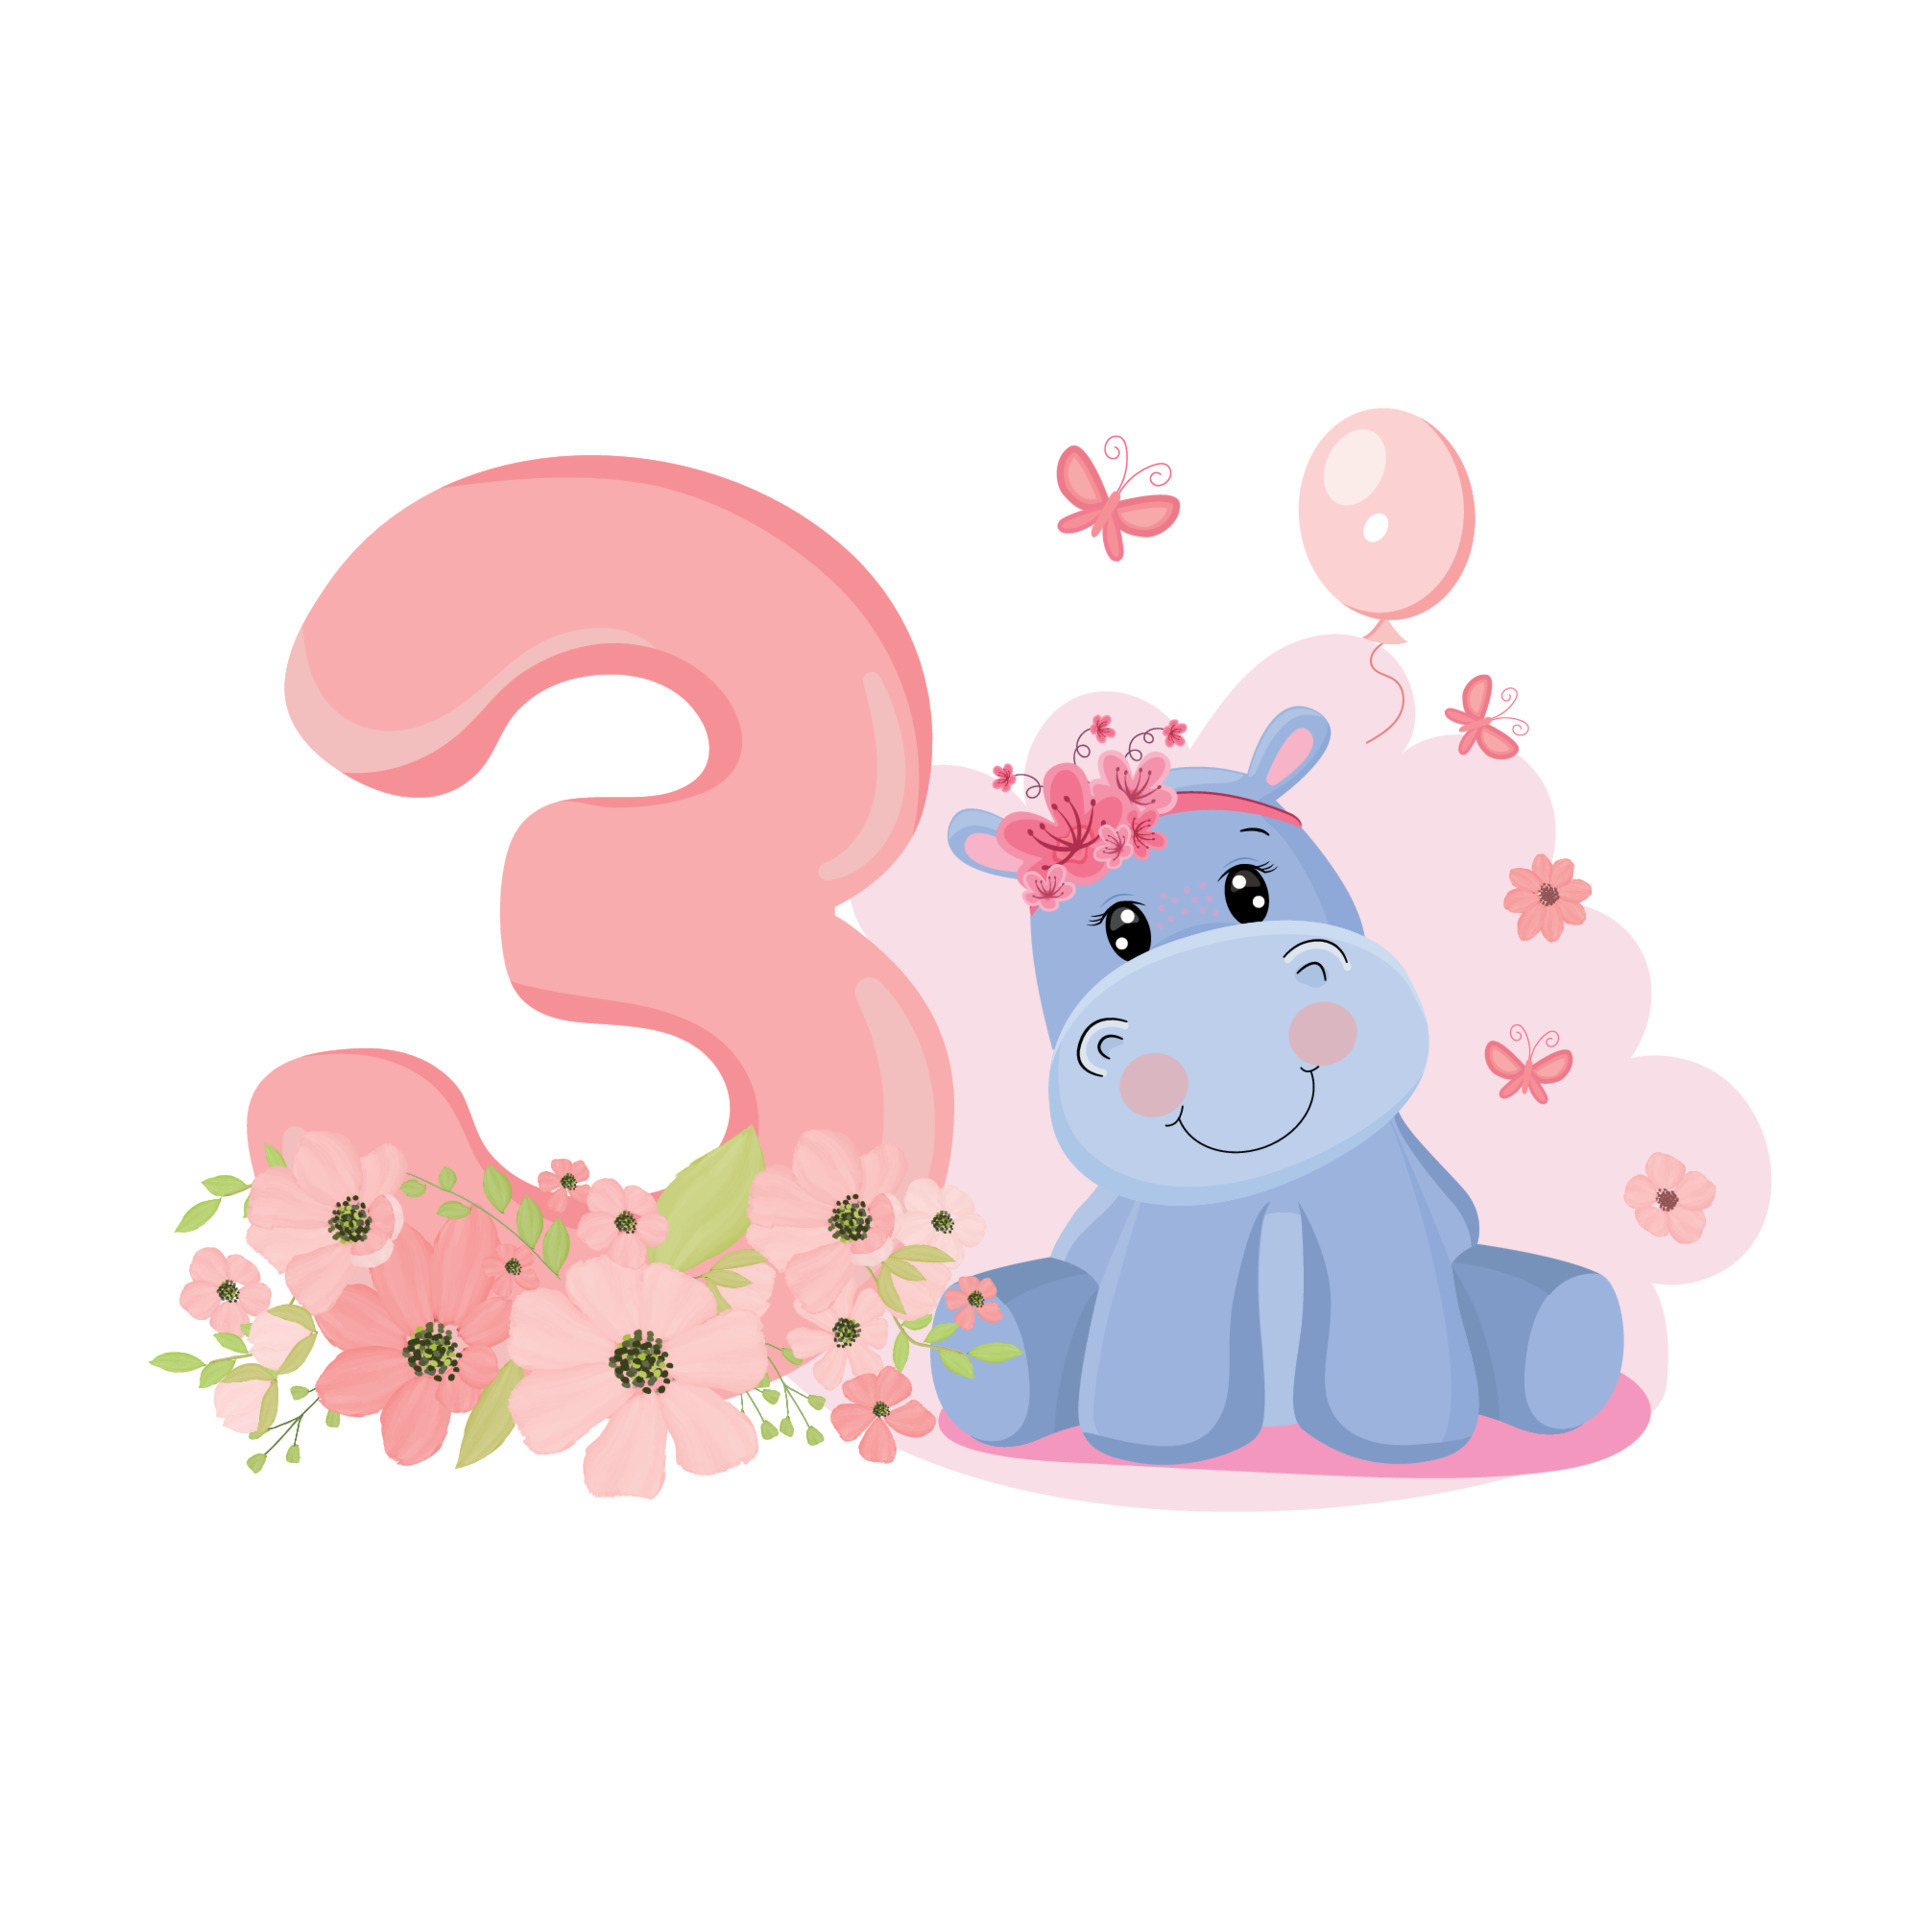 https://static.vecteezy.com/ti/vecteur-libre/p3/16516610-mignon-bebe-fille-hippopotame-invitation-d-anniversaire-trois-ans-trois-mois-joyeux-anniversaire-vectoriel.jpg